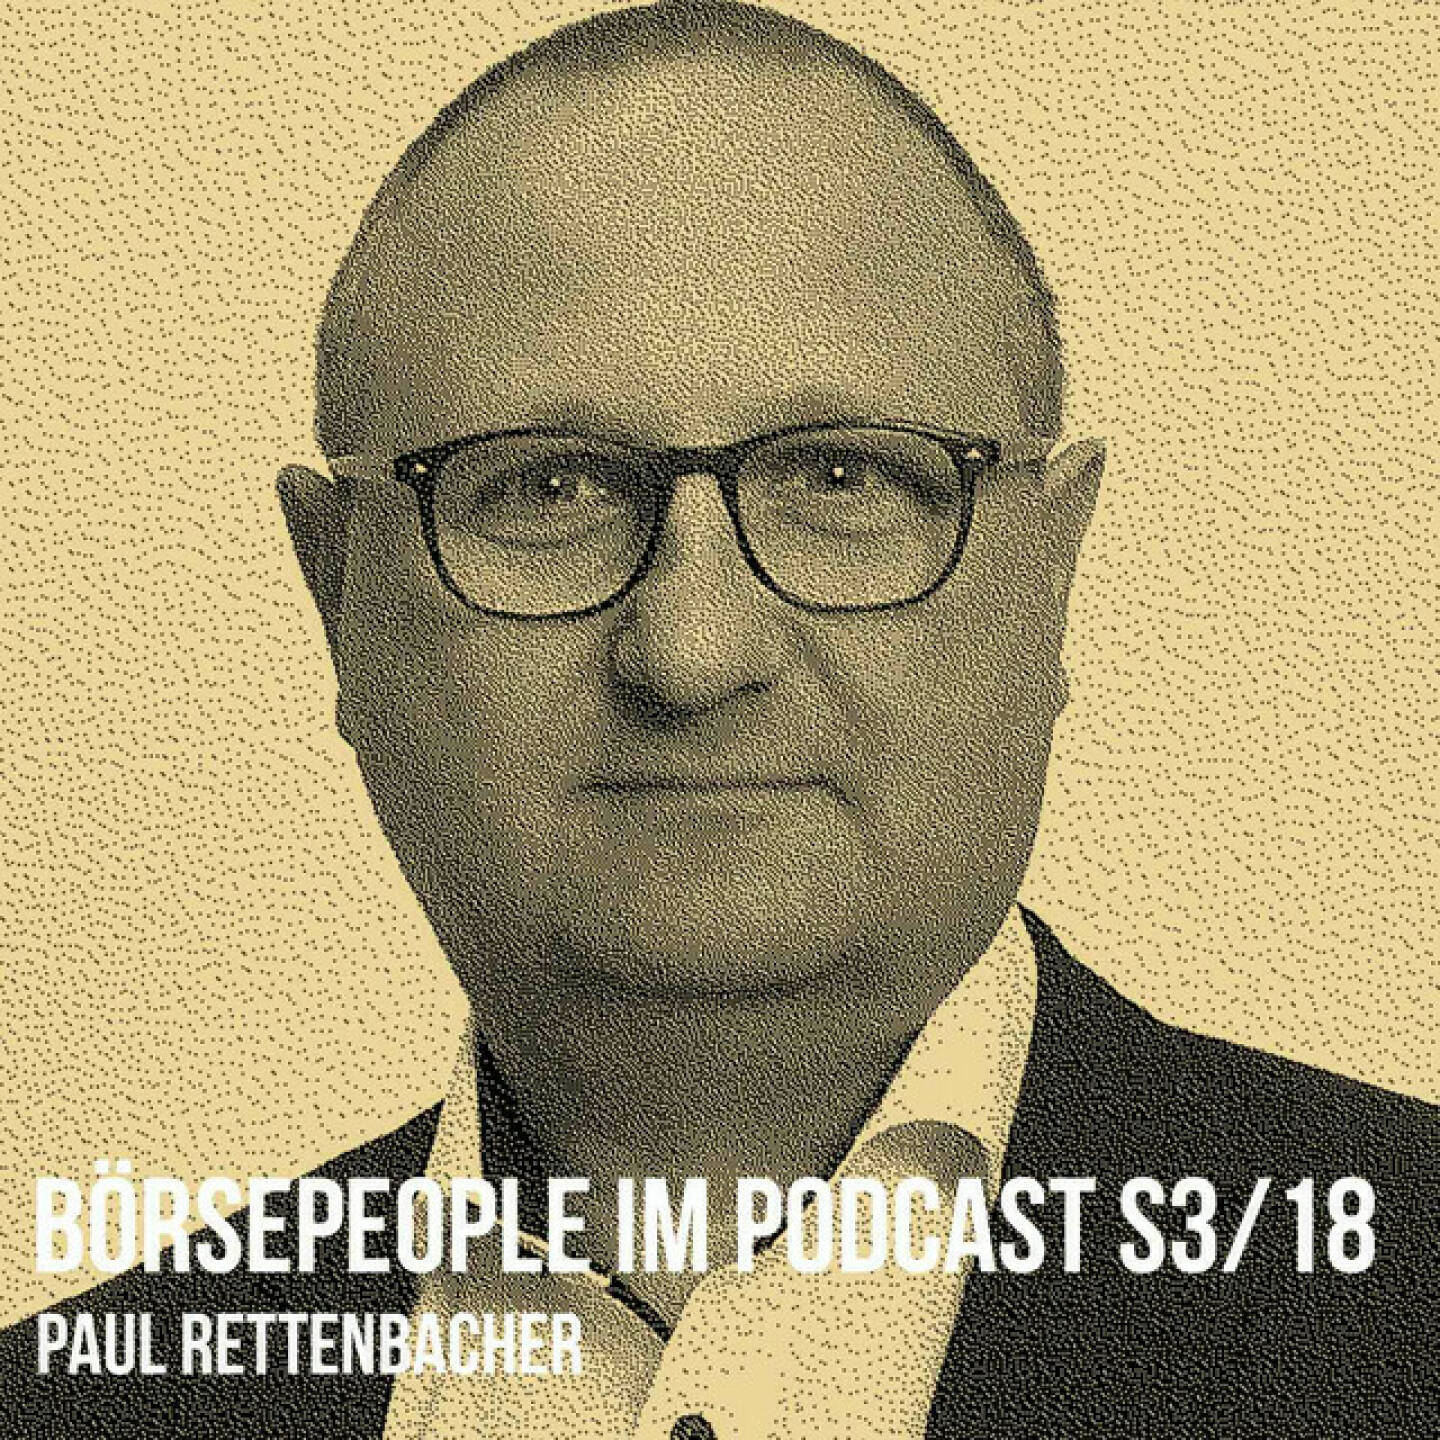 https://open.spotify.com/episode/7ChpRQlRc8VDypiWYHX5X3
Börsepeople im Podcast S3/18: Paul Rettenbacher - Ich habe für diesen Podcast meine &#34;Marktflüsterer&#34;, die mir Input zum Tagesgeschäft schenken und ich habe mit Paul Rettenbacher einen wichtigen Inputgeber, was die Ausgestaltung des Produkts selbst betrifft. Er hat alle Folgen gehört und gibt wertvolle Tipps. Nicht nur deshalb ist das für mich eine Highlight-Folge. Paul ist schon in der HAK mit Aktien in Berührung bekommen, war dann jahrelang im Medienbereich tätig (ORF, Bezirksrundschau OÖ), darunter 8 Jahre als Cartoonist. Sein Steckenpferd Kommunikation lebte er bei der Energie AG, Salzburg Milch und den Salinen aus - PR, Marketing und Umweltthemen waren stets dabei. Kurz nach dem Börsengang der THI begann seine IR-Karriere, das Kapital THI endete börslich nicht wie erwünscht und der Wechsel zu Polytec folgte 2015. Dort fühlt sich Paul sehr wohl. Wir reden auch über Heinrich Schaller, Wilhelm Rasinger und Inspirationen aus der Familie. Am Tag dieser Aufnahme wurde Paul Abends dann in den CIRA-Vorstand gewählt. Und ja, er wollte auch einen Song singen im Abspann, da sage ich freilich nicht nein, ausgesucht für diesen One-Take hat er sich einen der schwierigsten Beatles Songs und wir sind auch beide ein bissl überfordert ...<br/>https://www.polytec-group.com<br/>About: Die Serie Börsepeople findet im Rahmen von http://www.christian-drastil.com/podcast statt. Es handelt sich dabei um typische Personality- und Werdegang-Gespräche. Die Season 3 umfasst unter dem Motto „22 Börsepeople“ erneut 22 Podcast-Talks, divers zusammengesetzt. Presenter der Season 3 ist der Börsekandidat VAS AG ( https://www.vas.co.at). Der meistgehörte Börsepeople Podcast 2022 per Stichtag 30.11., 23:59 Uhr wird es einen Number One Award für 2022 gewinnen (vgl. https://boerse-social.com/numberone/2021)- Zwischenstand tagesaktuell um 12 Uhr aktualisiert unter http://www.audio-cd.at/people .<br/>Bewertungen bei Apple (oder auch Spotify) machen mir Freude: https://podcasts.apple.com/at/podcast/christian-drastil-wiener-borse-sport-musik-und-mehr-my-life/id1484919130 .